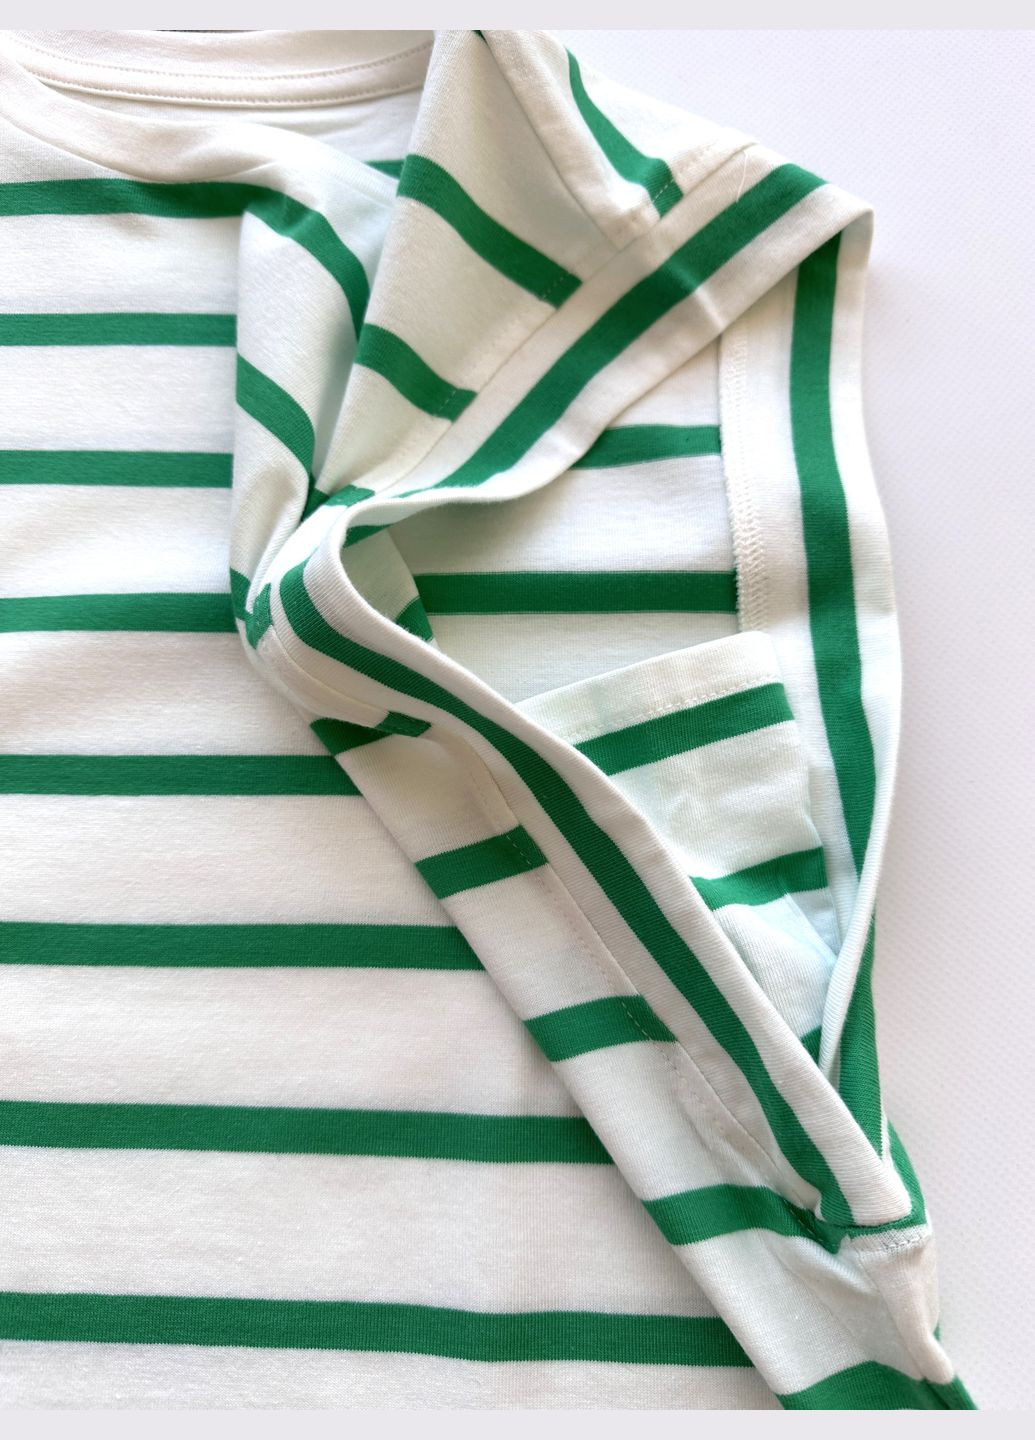 Зеленая летняя футболка без рукавов полосатая бело-зеленая 2000-55 (146 см) OVS